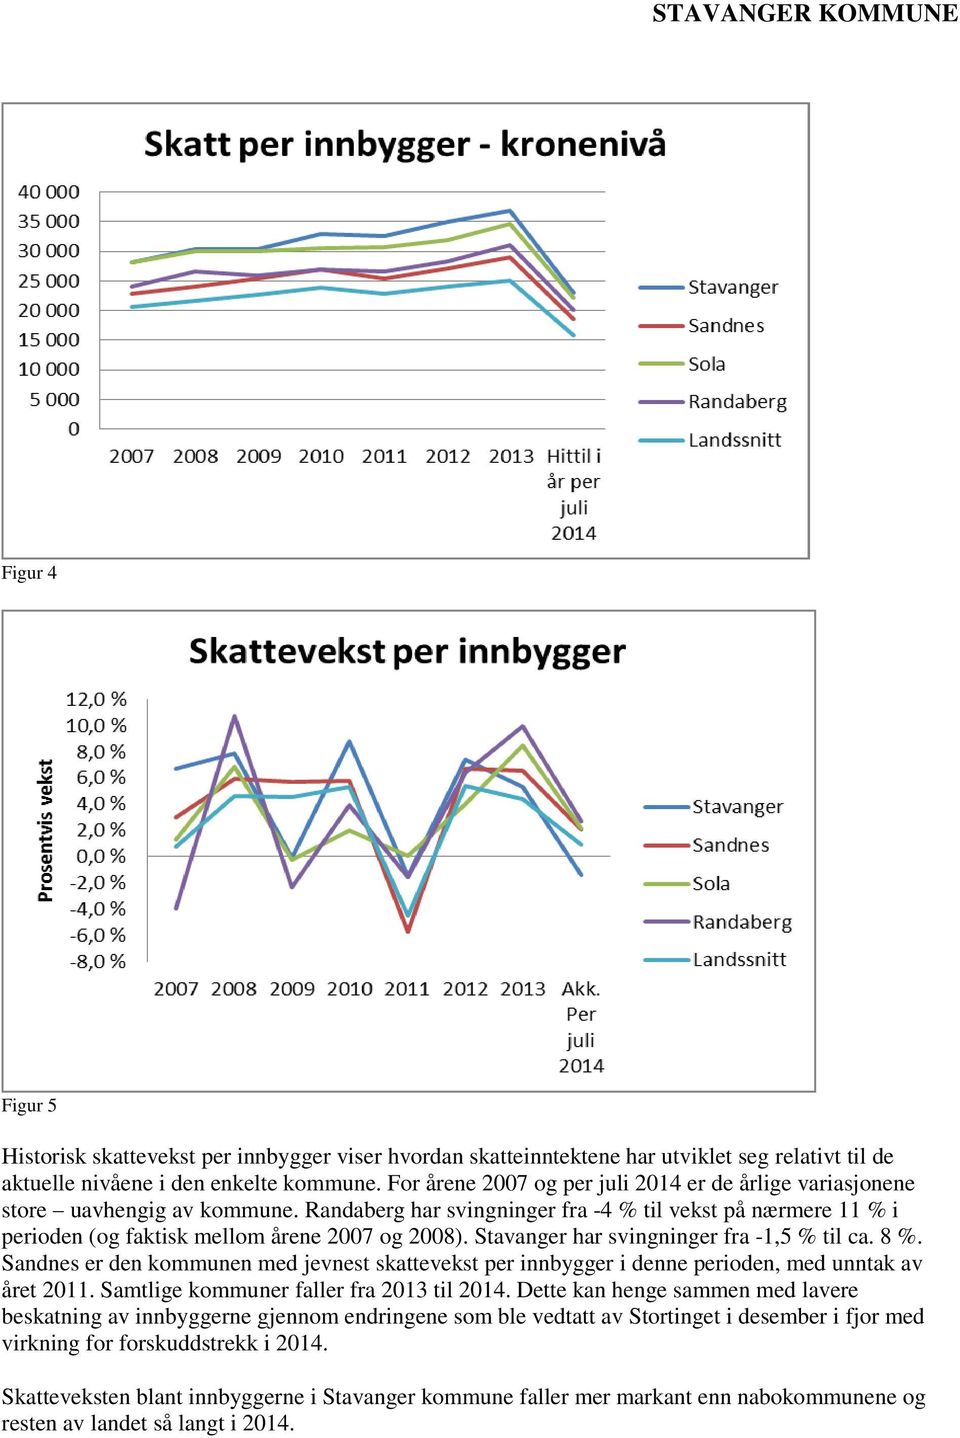 Stavanger har svingninger fra -1,5 % til ca. 8 %. Sandnes er den kommunen med jevnest skattevekst per innbygger i denne perioden, med unntak av året 2011. Samtlige kommuner faller fra 2013 til 2014.